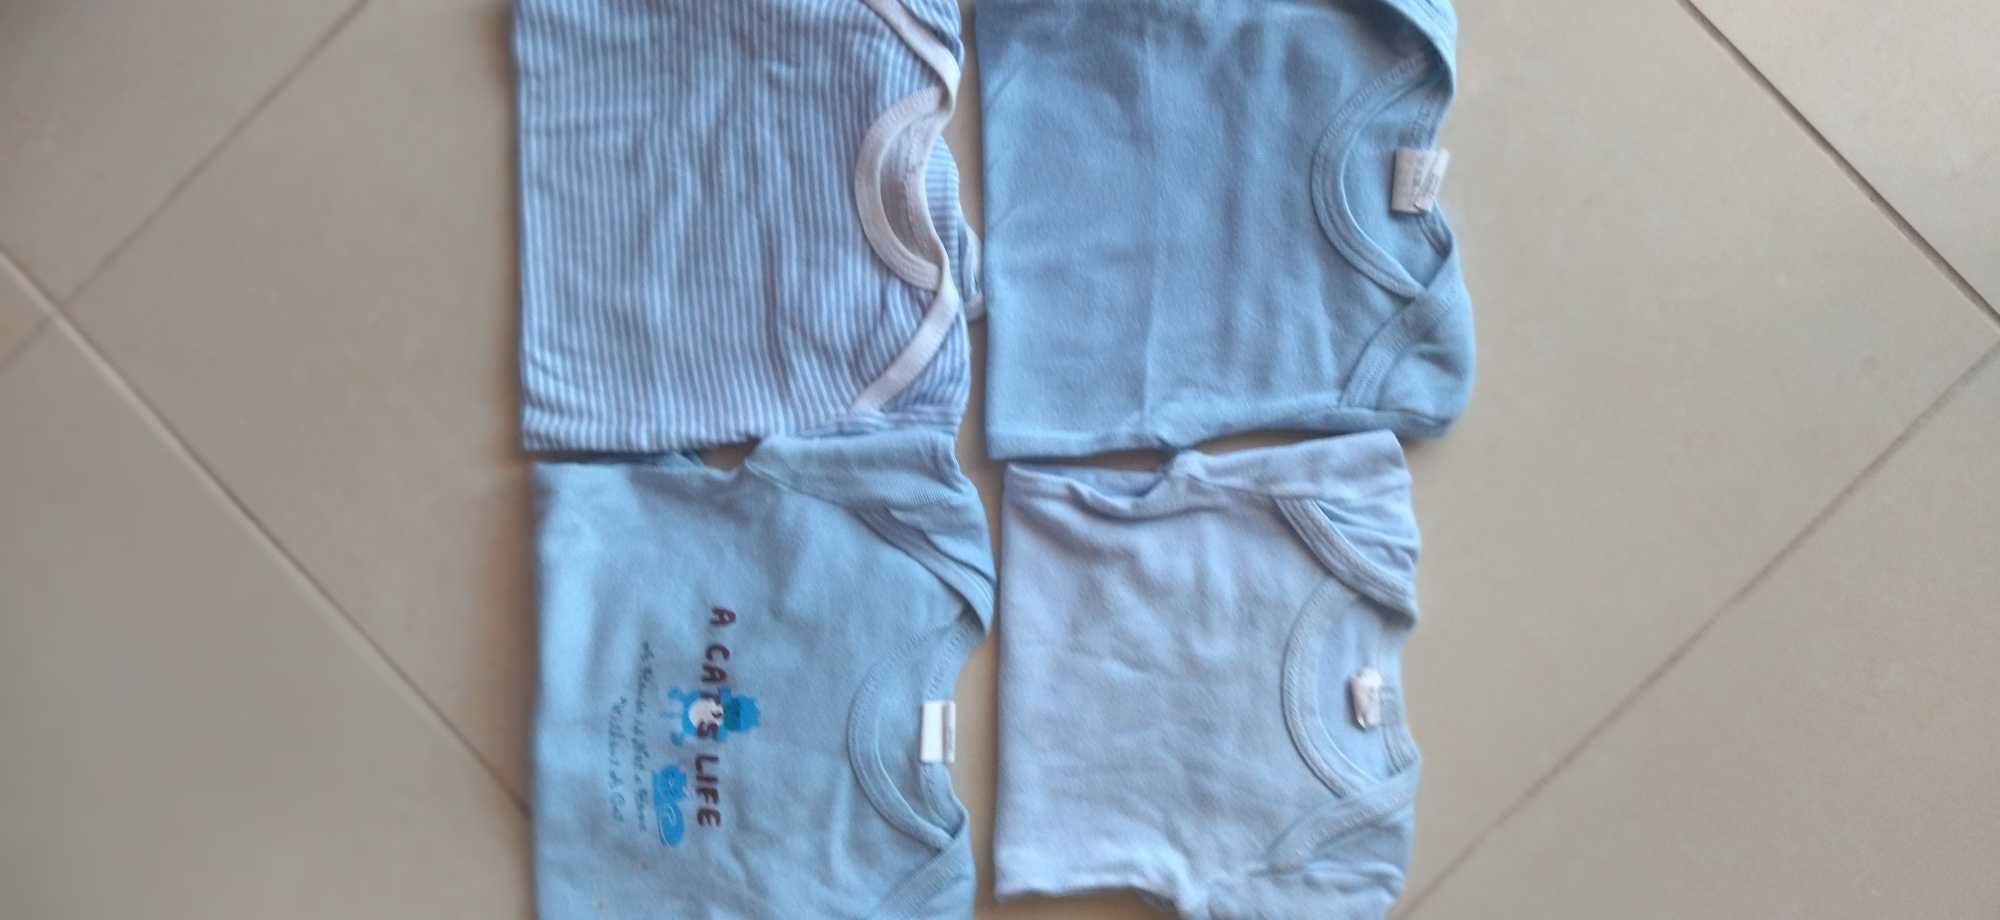 7 Body s de menino tamanho 6 meses + T-Shirt azul- novo preço